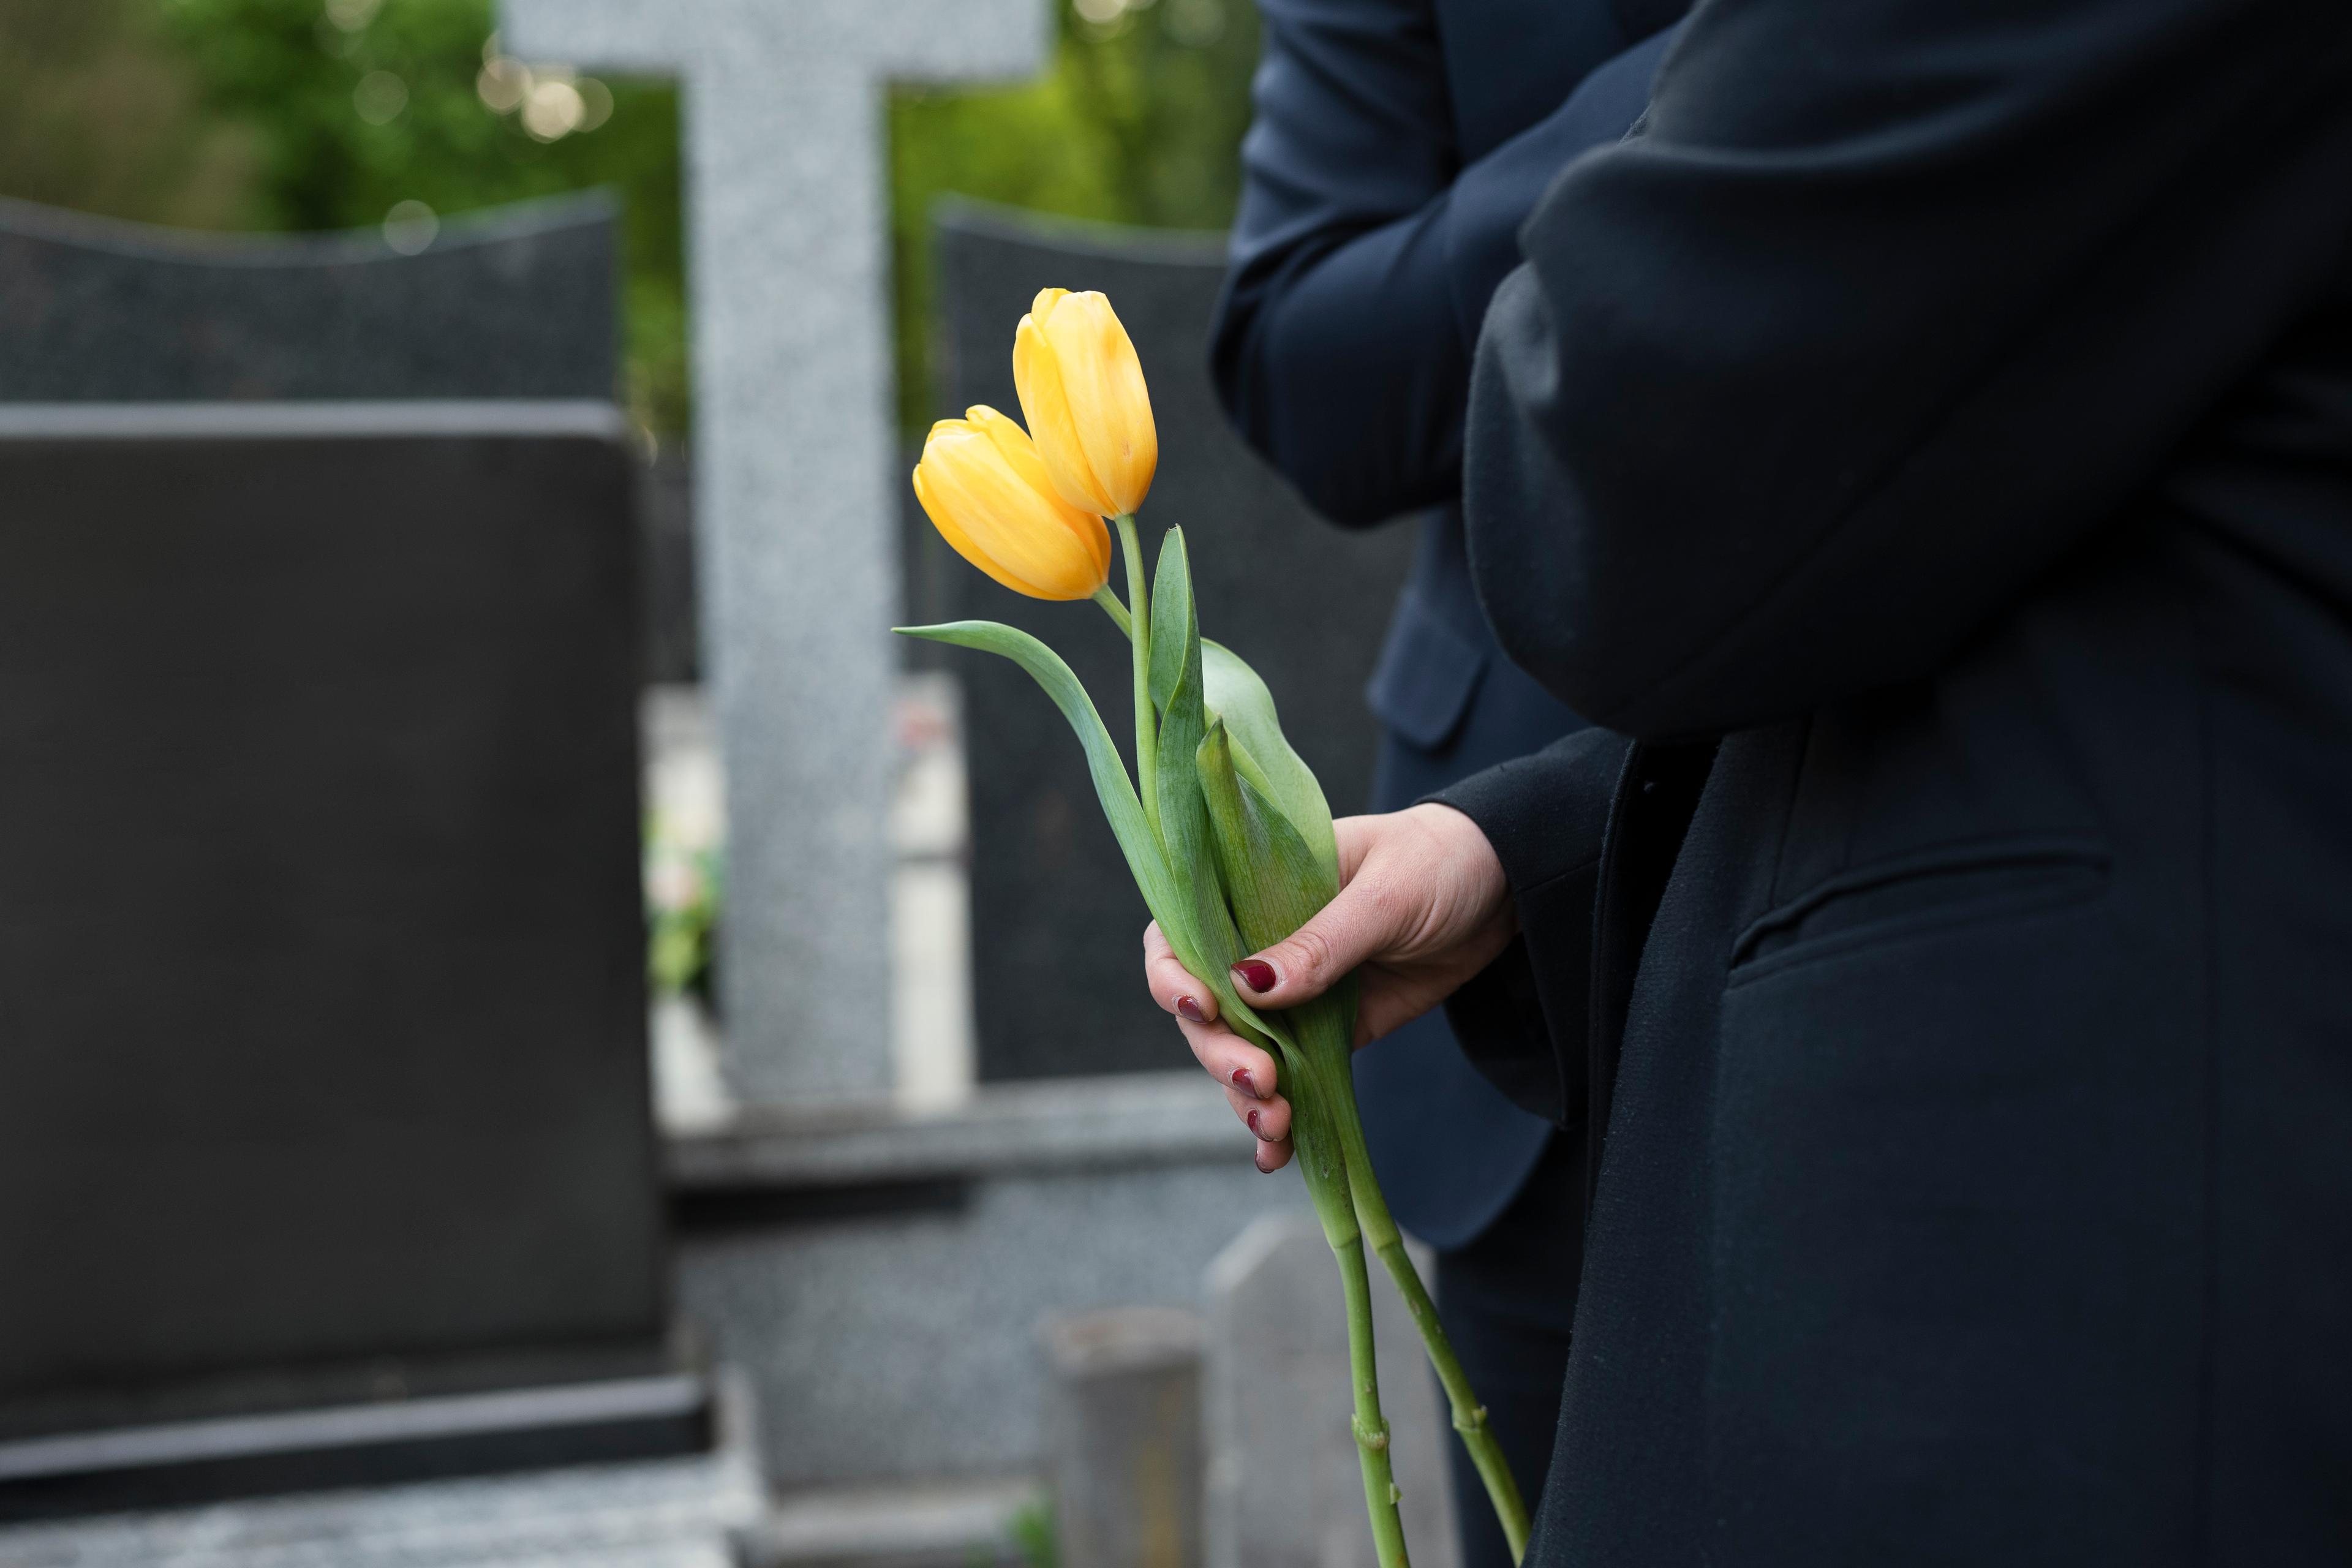 Оформить получение пособия на погребение можно будет онлайн